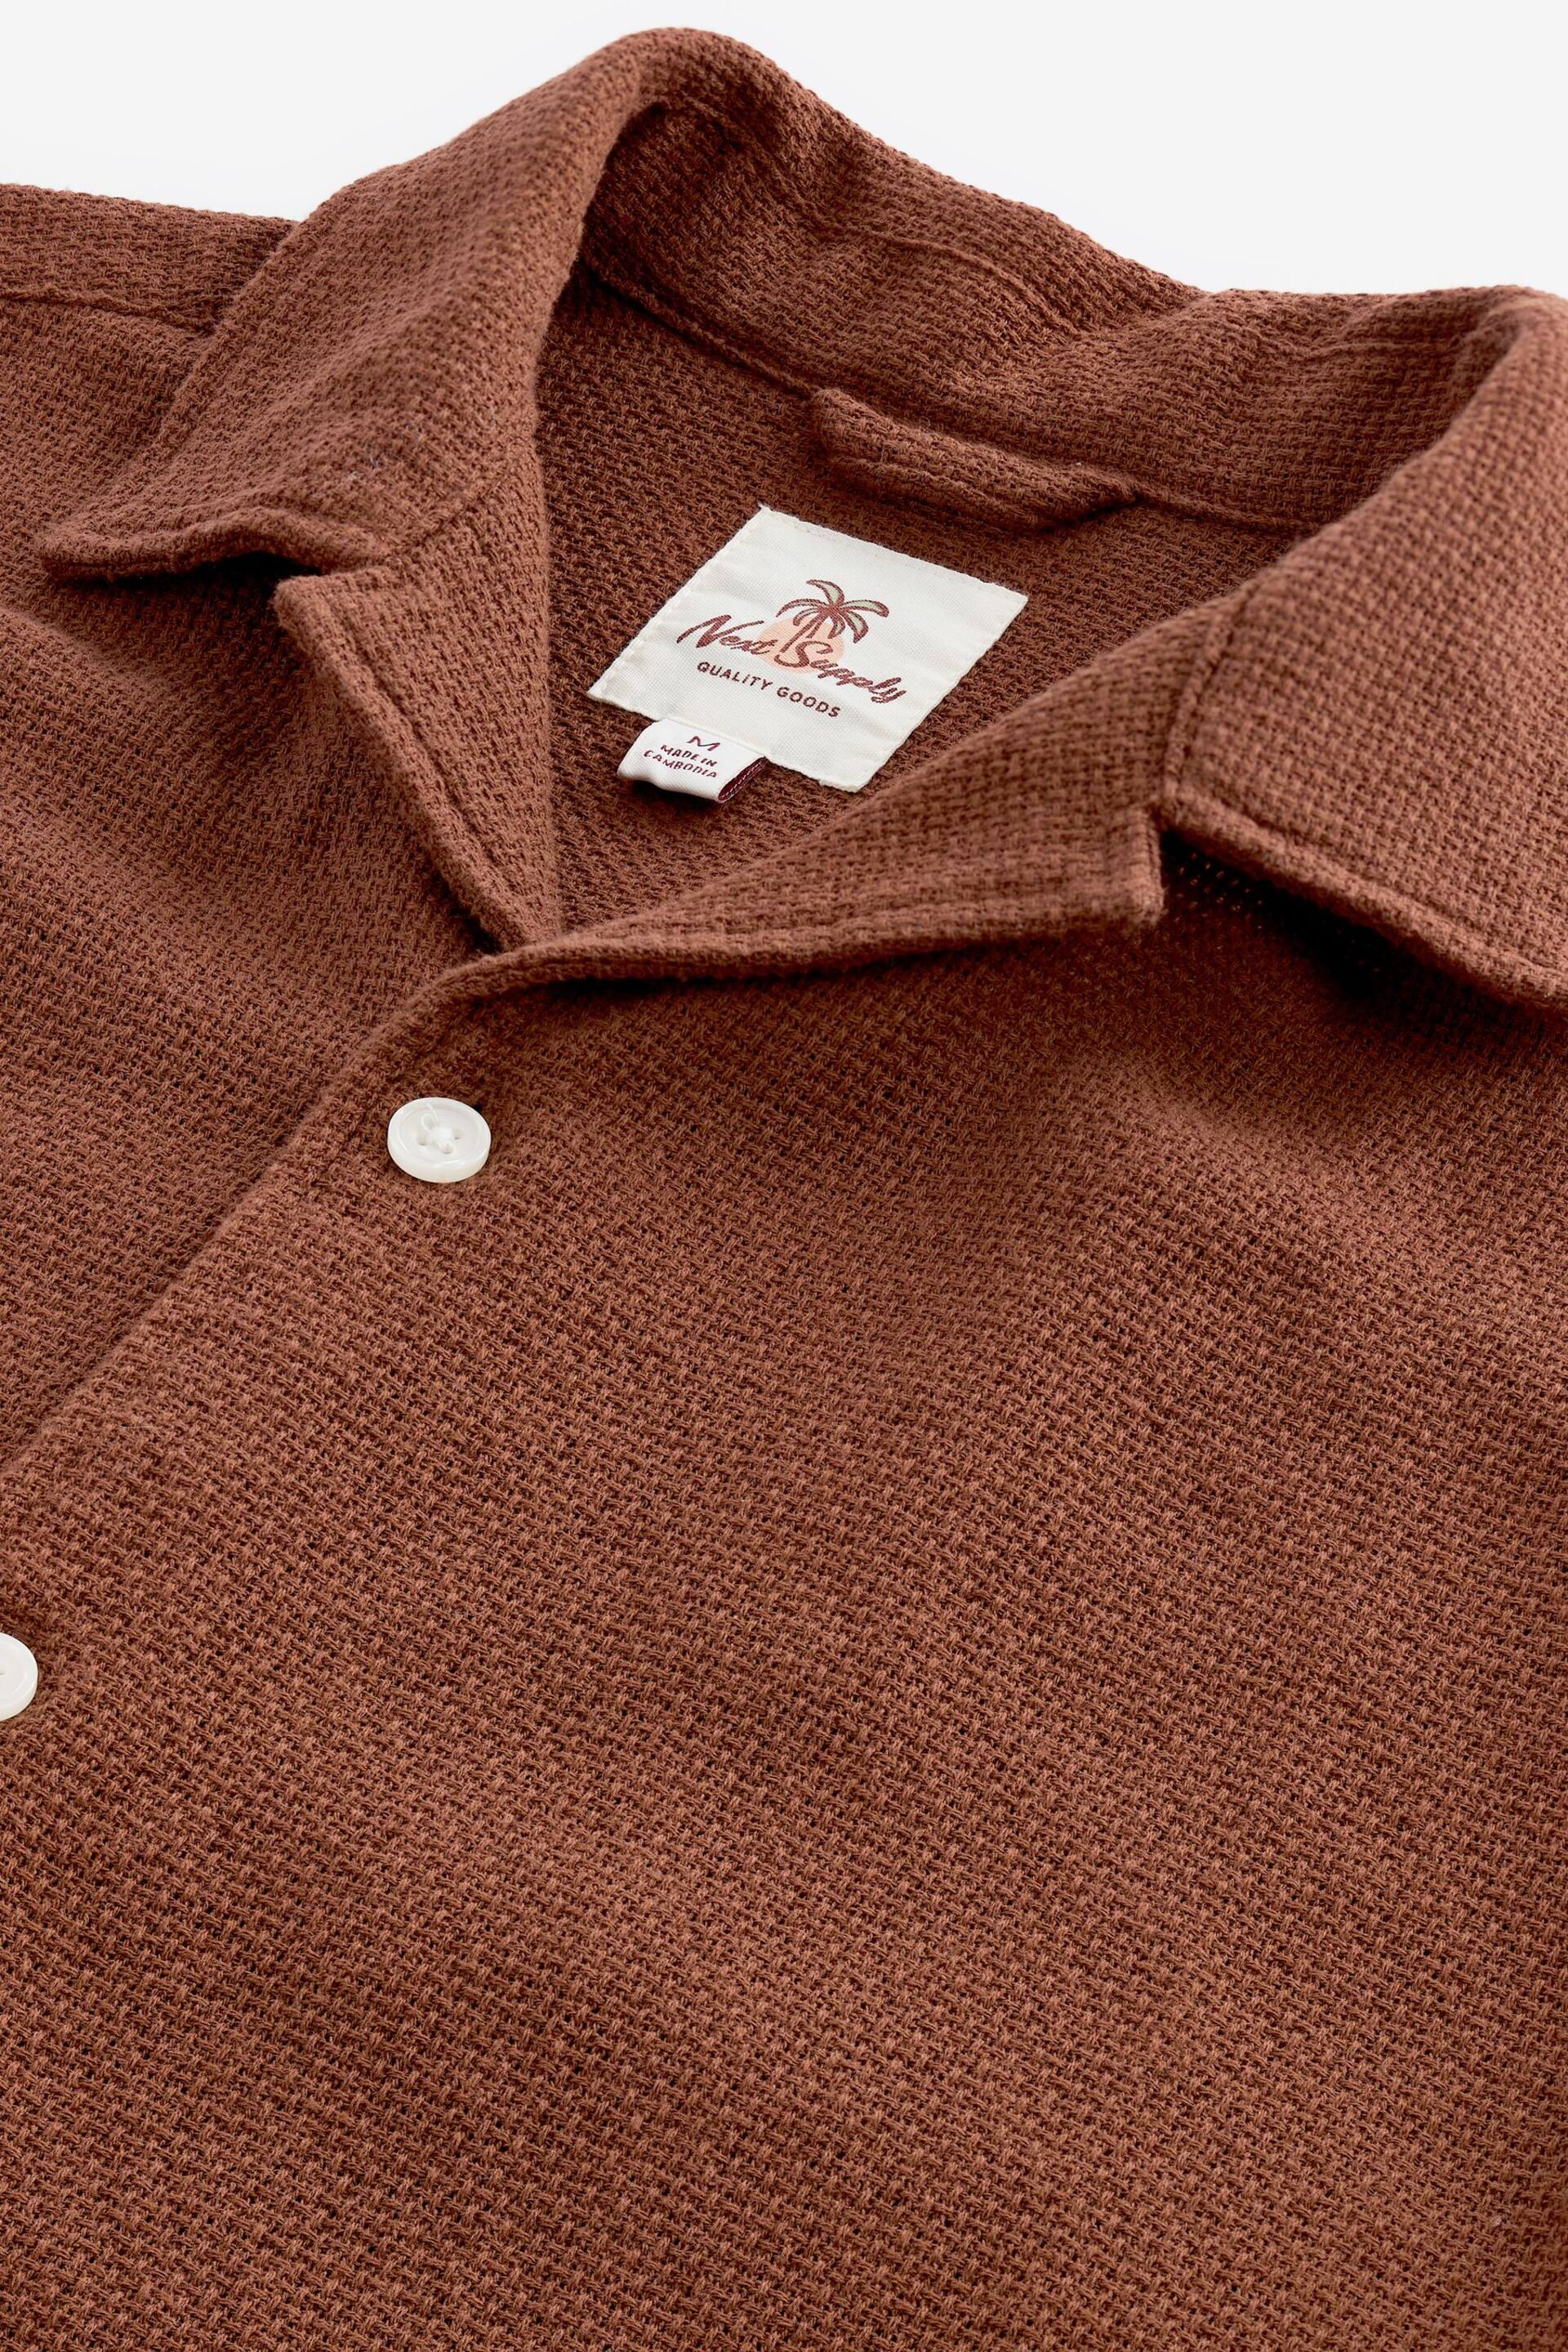 Brown Textured Short Sleeve Cuban Collar Shirt - Image 6 of 7